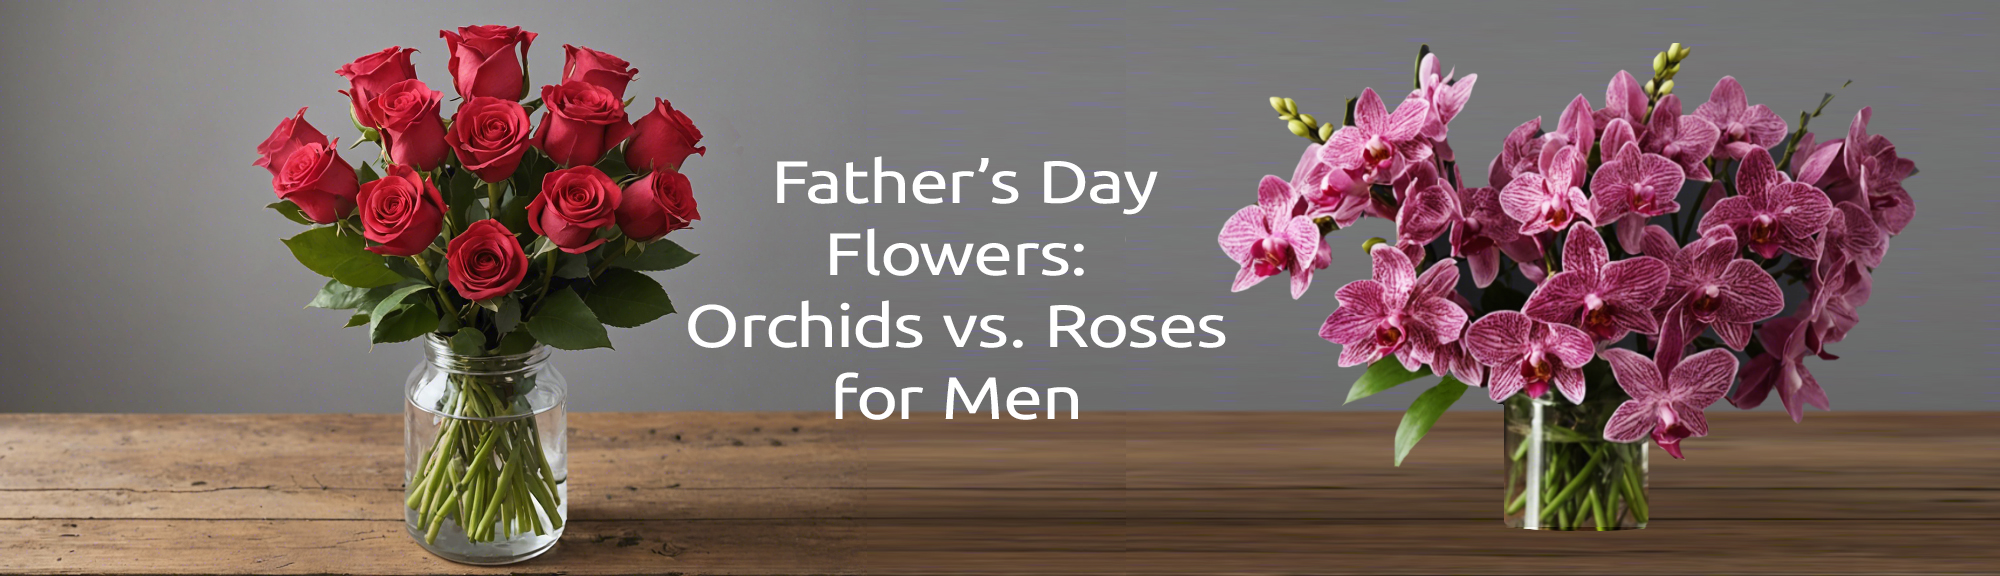 Orchids vs. Roses for Men